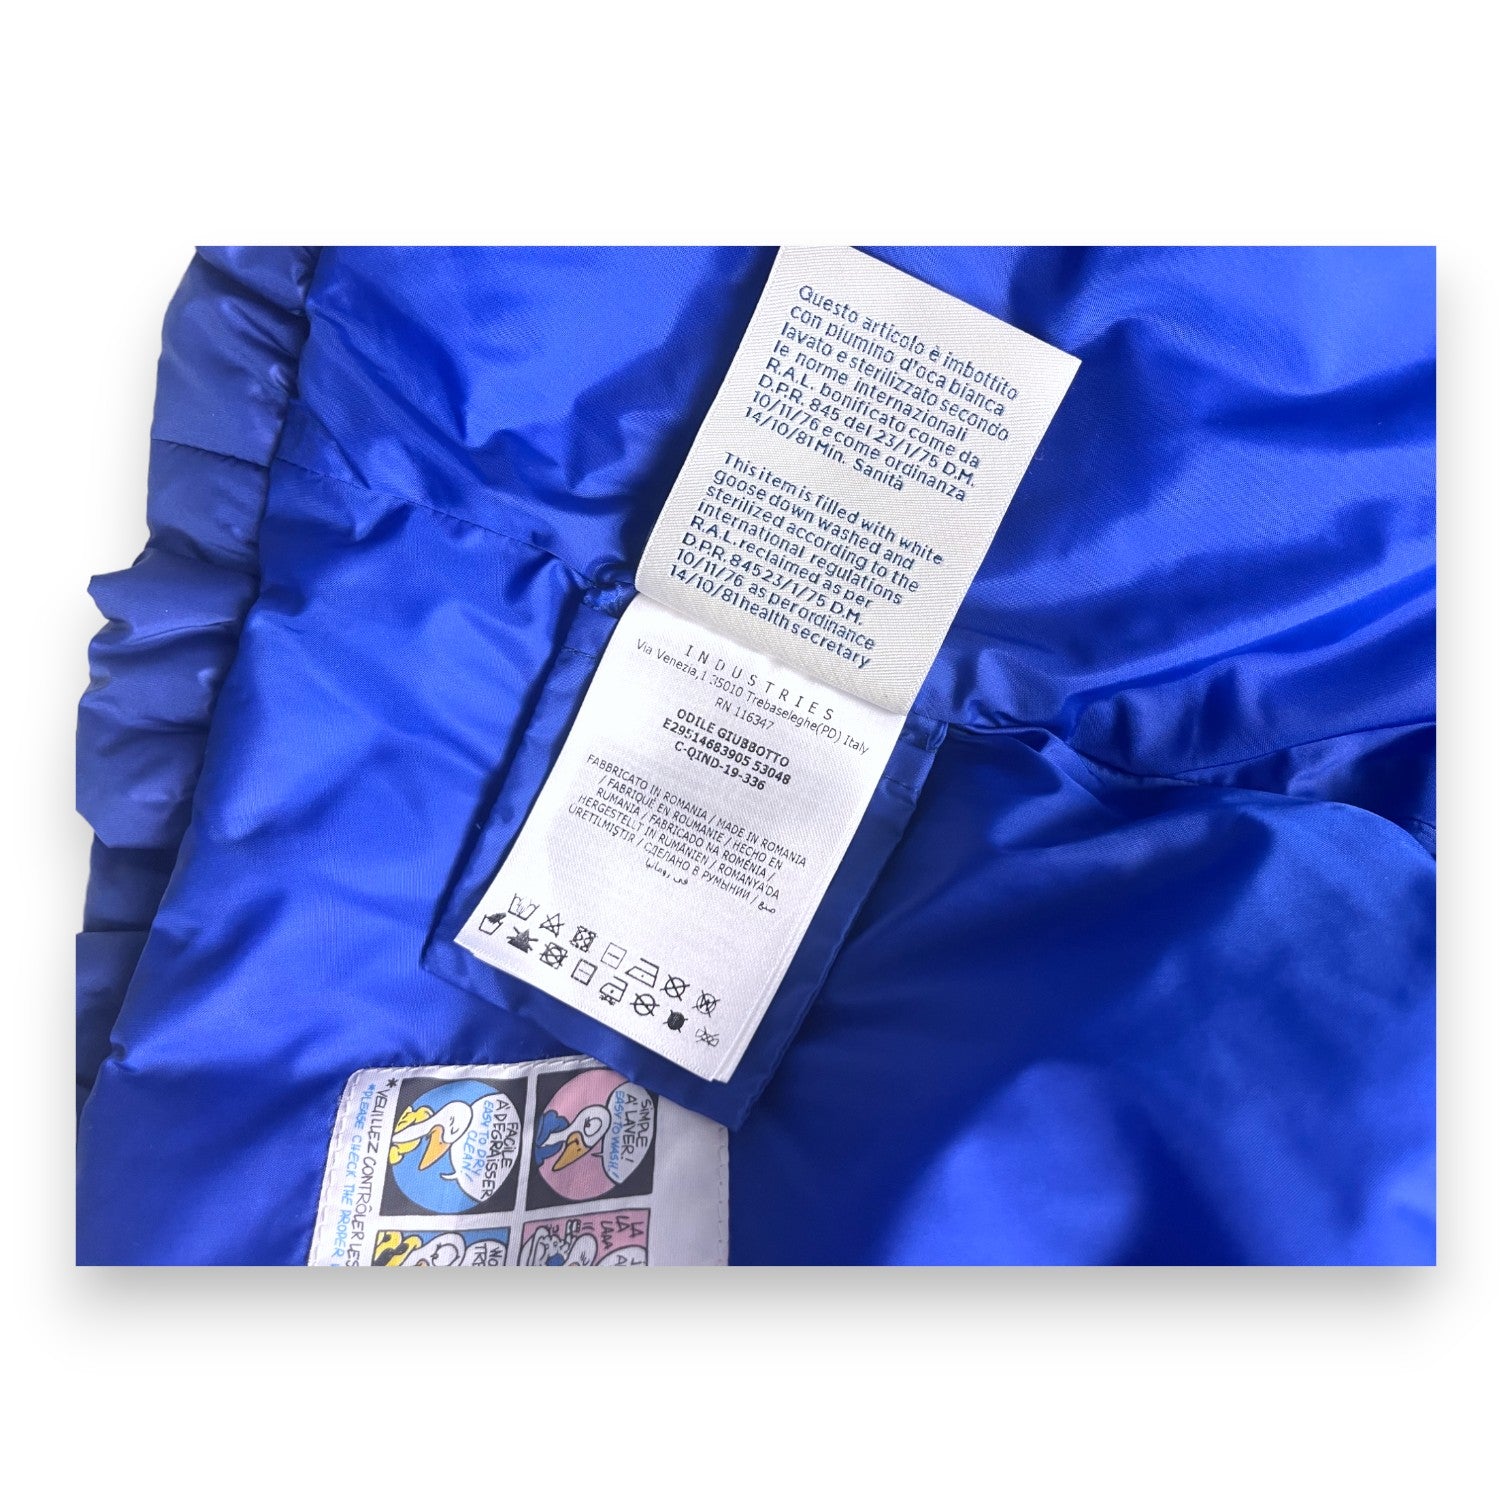 MONCLER - Doudoune bleue électrique évasée - 2 ans